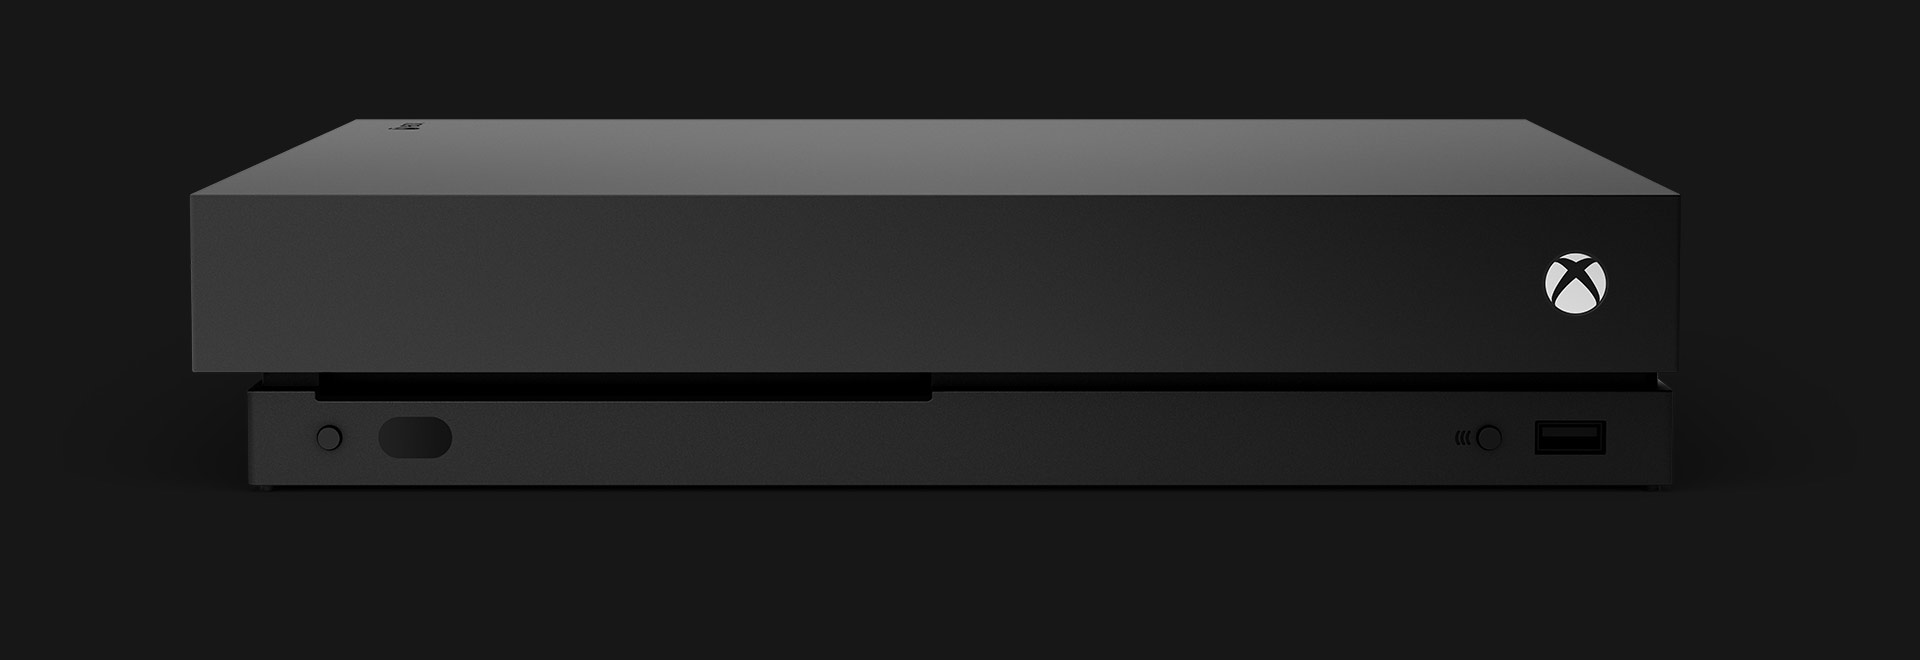 Xbox One X 主機的正面圖。